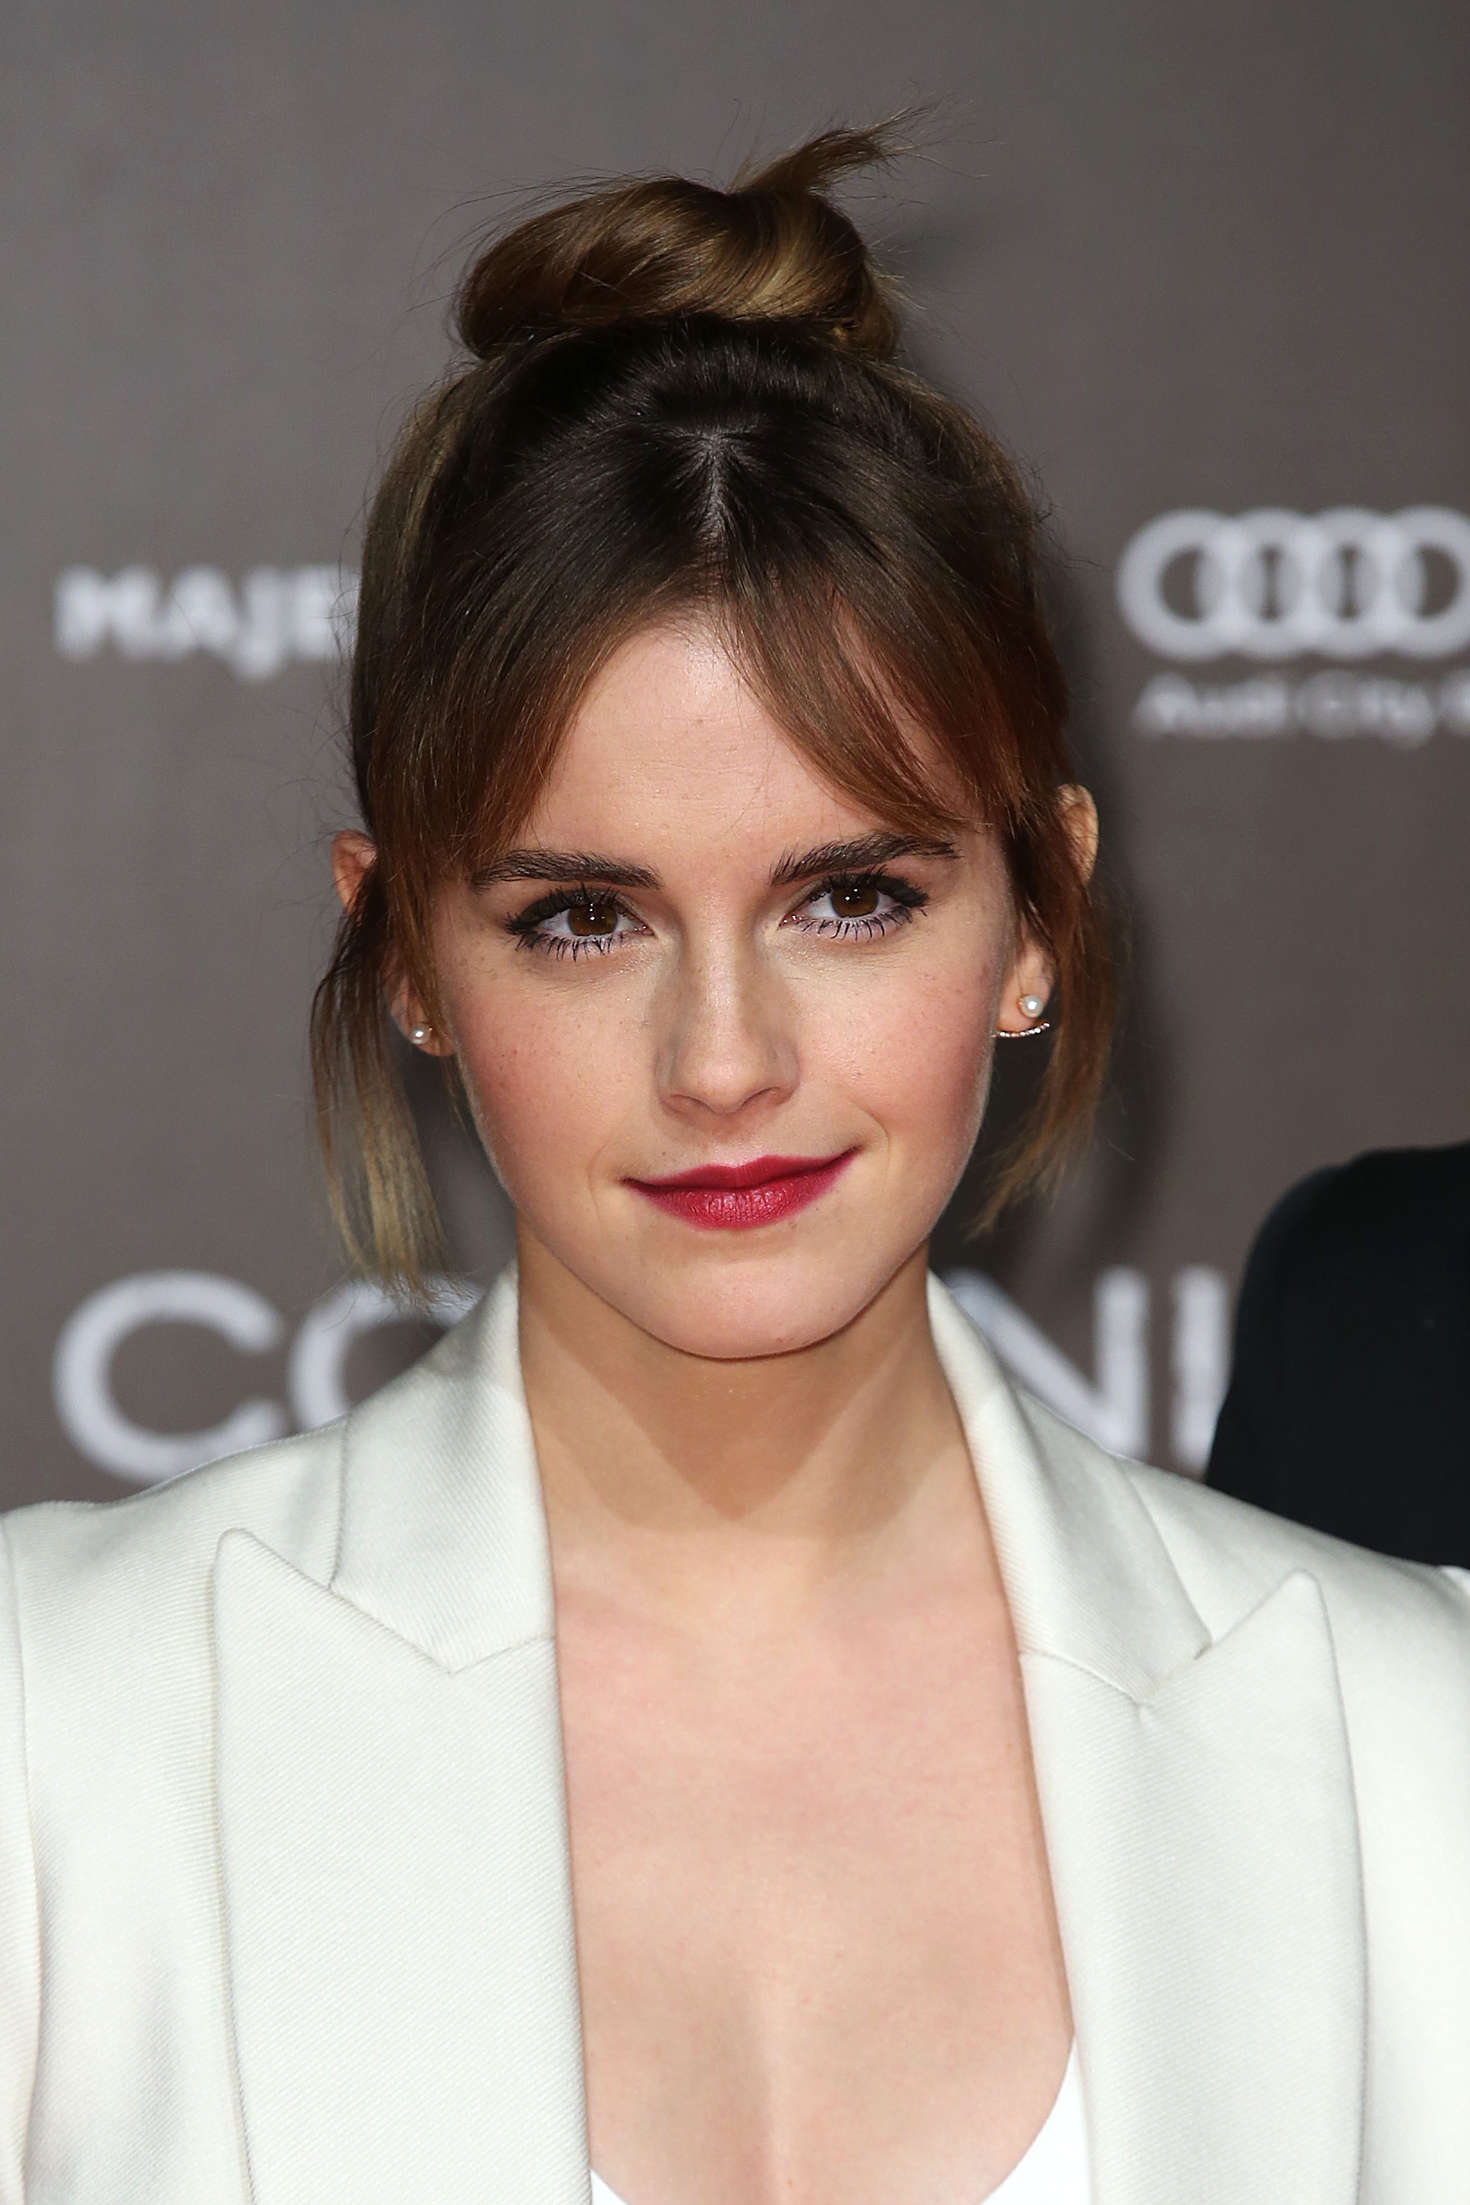 Emma Watson Colonia Dignidad Premiere 12